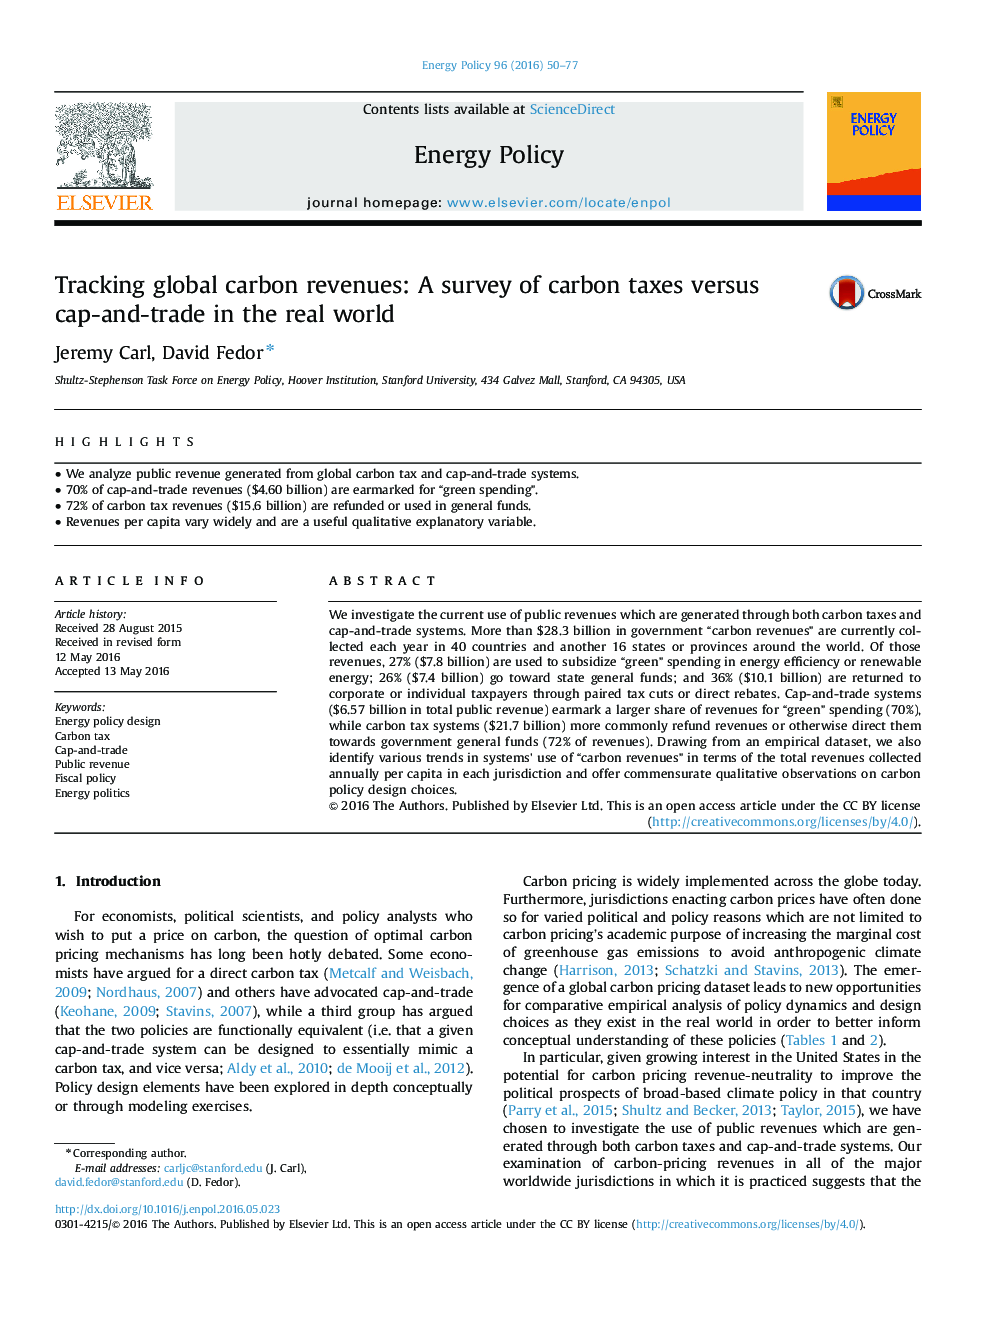 ردیابی درآمدهای کربن جهانی: بررسی مالیات های کربن علیه کلاهبرداری و تجارت در دنیای واقعی 